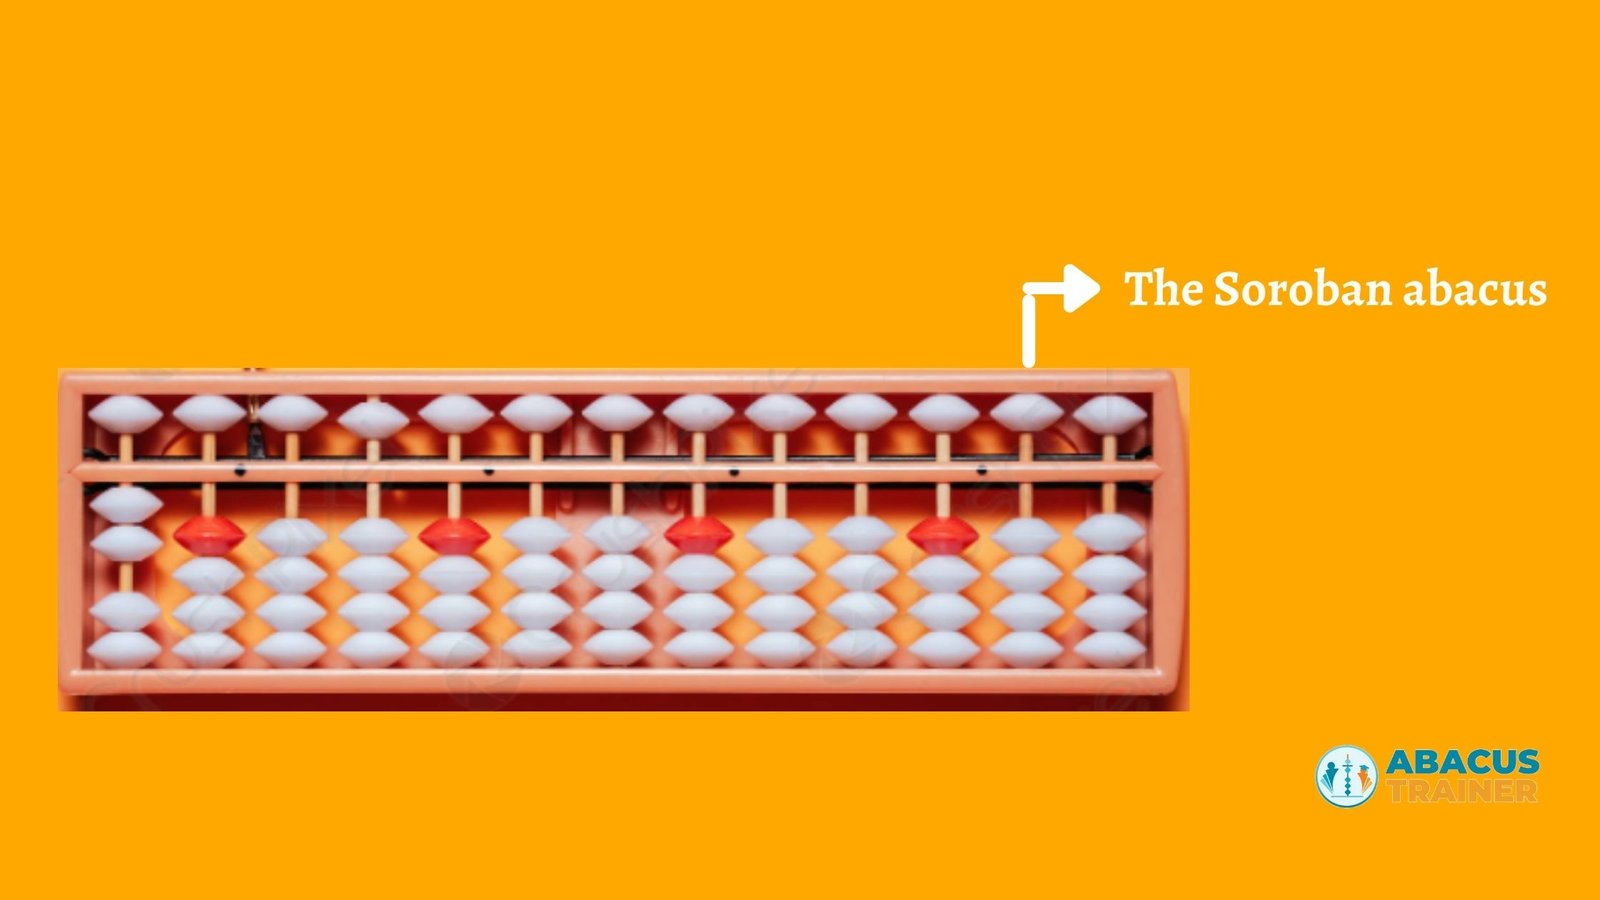 Standard Soroban Abacus Holzspielzeug   17 Stellig Mit 85 Perlen   Funktionelles 